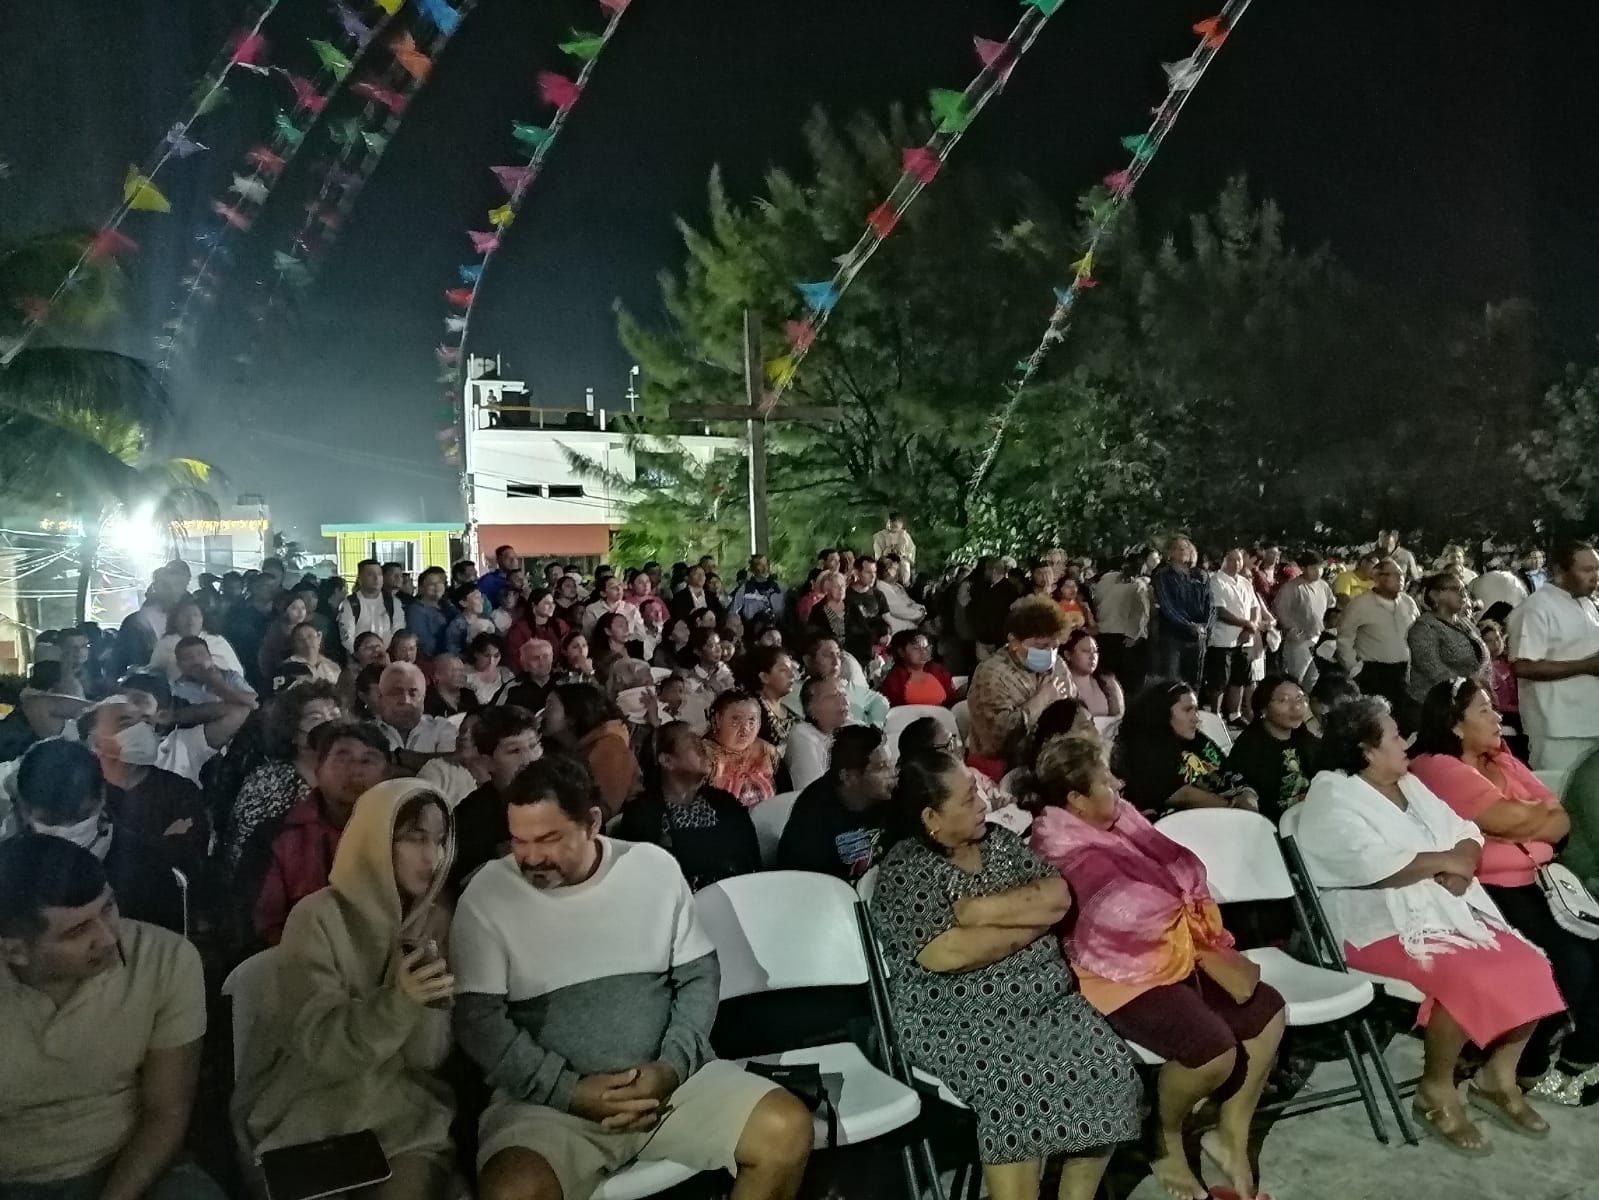 Los fieles seguidores de la Virgen de Guadalupe se reunieron en Isla Mujeres